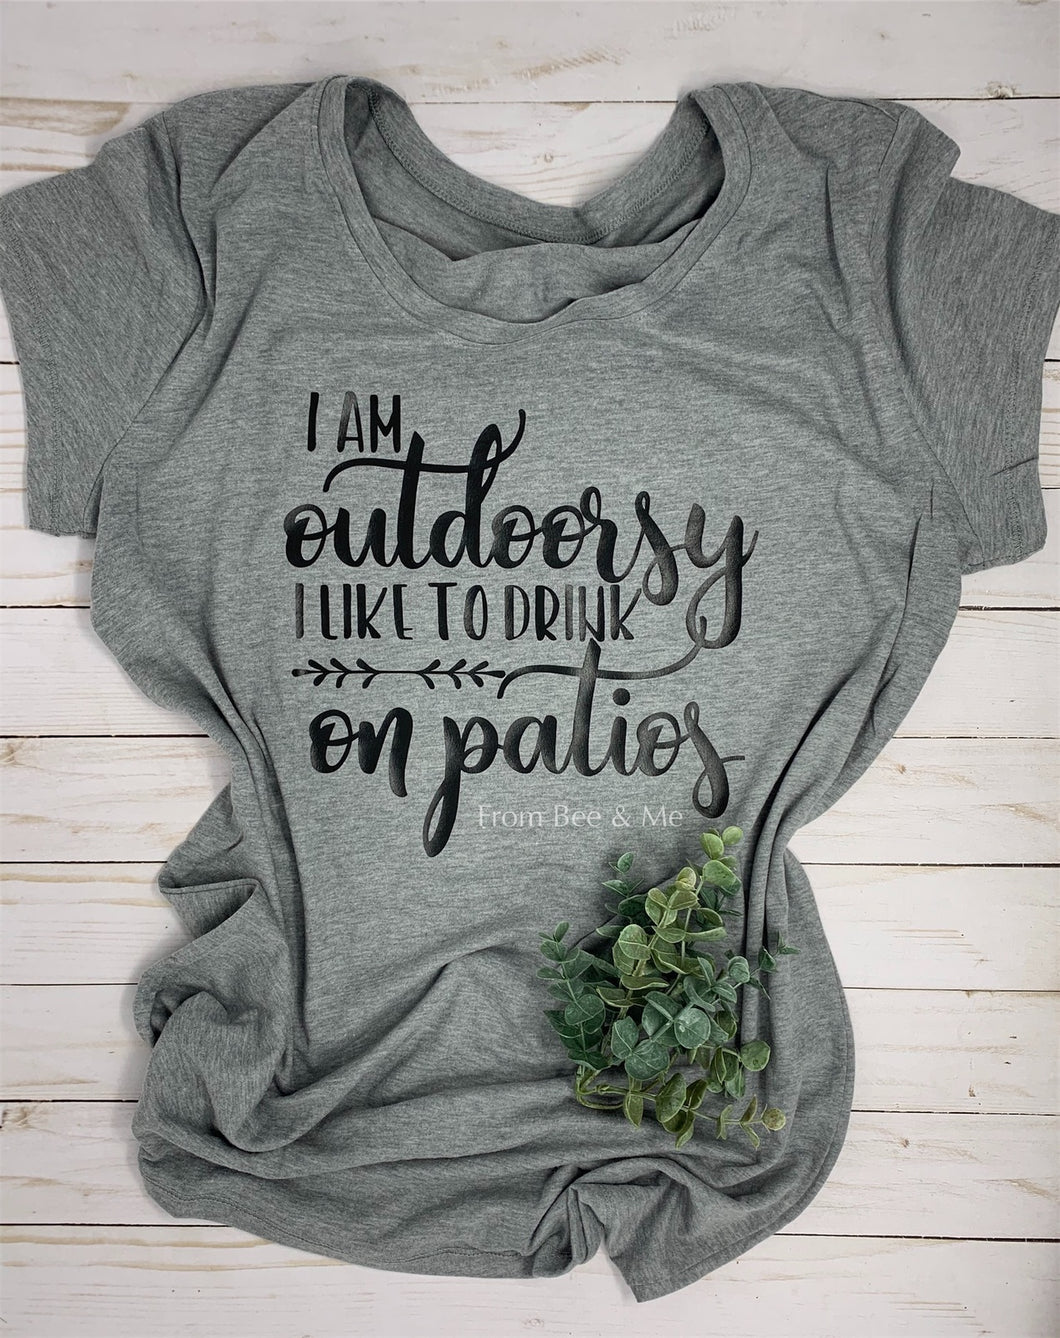 I Am Outdoorsy T-Shirt